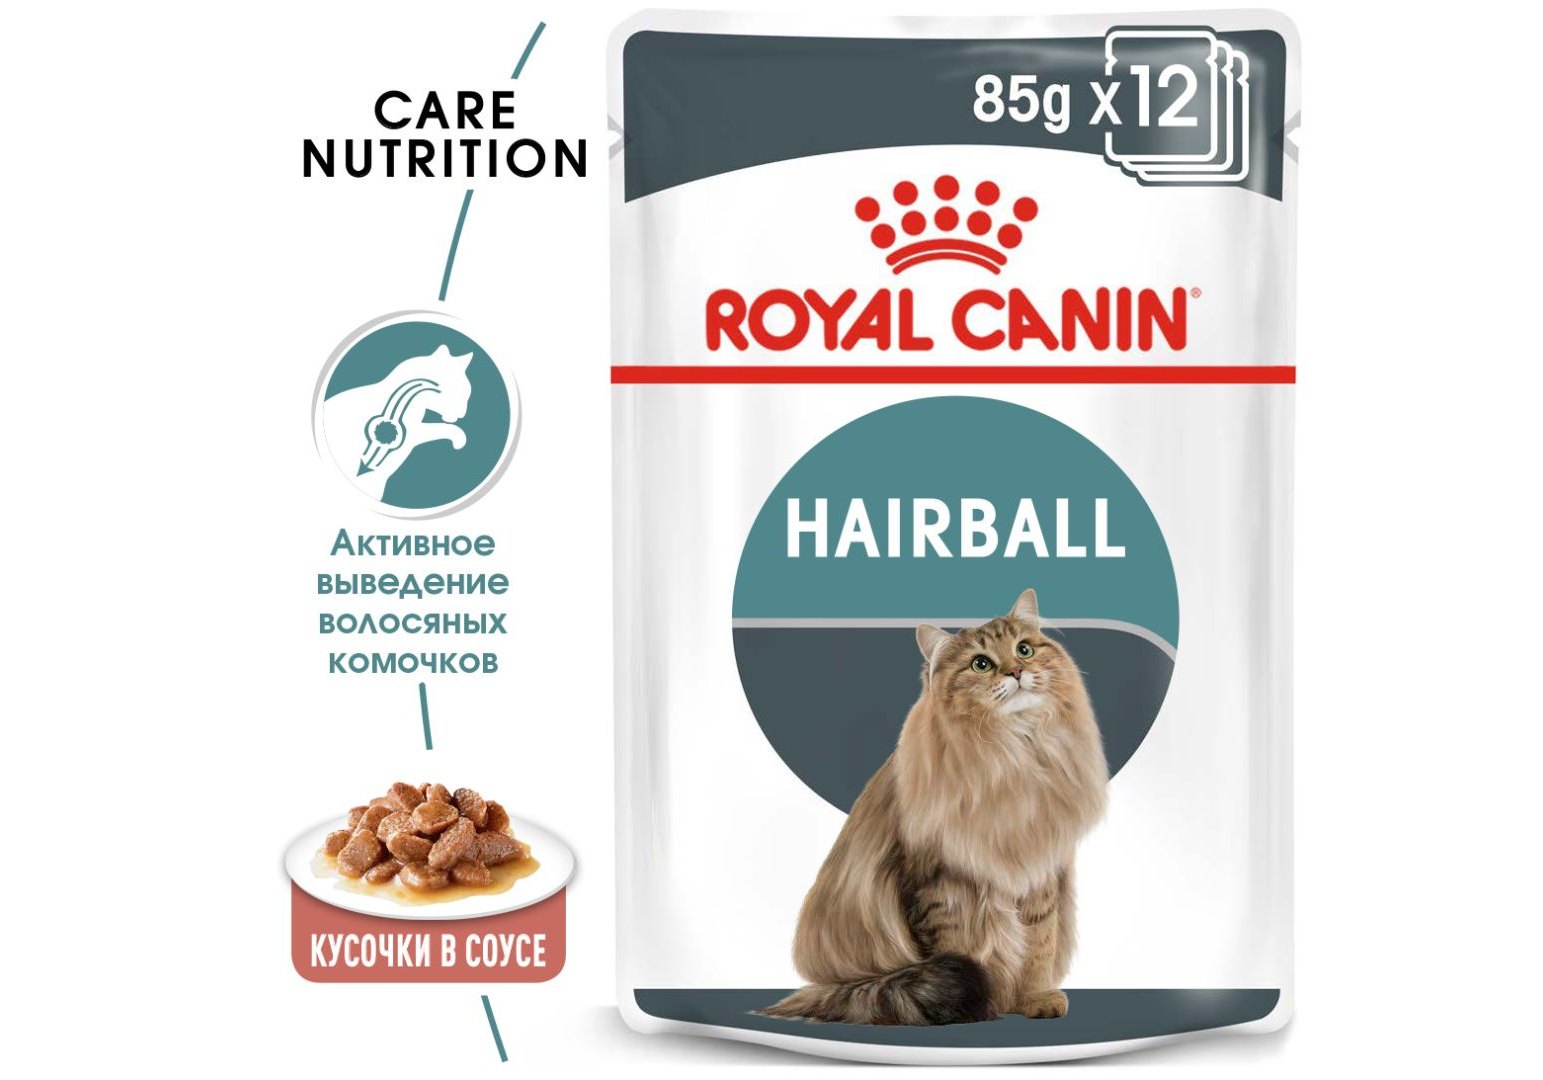 Royal Canin Hairball Care / Влажный корм (Консервы-Паучи) Роял Канин  Хэйрбол Кэа для кошек Вывод волосяных комочков (цена за упаковку) 85г х  12шт купить в Москве по низкой цене 1 070₽ |